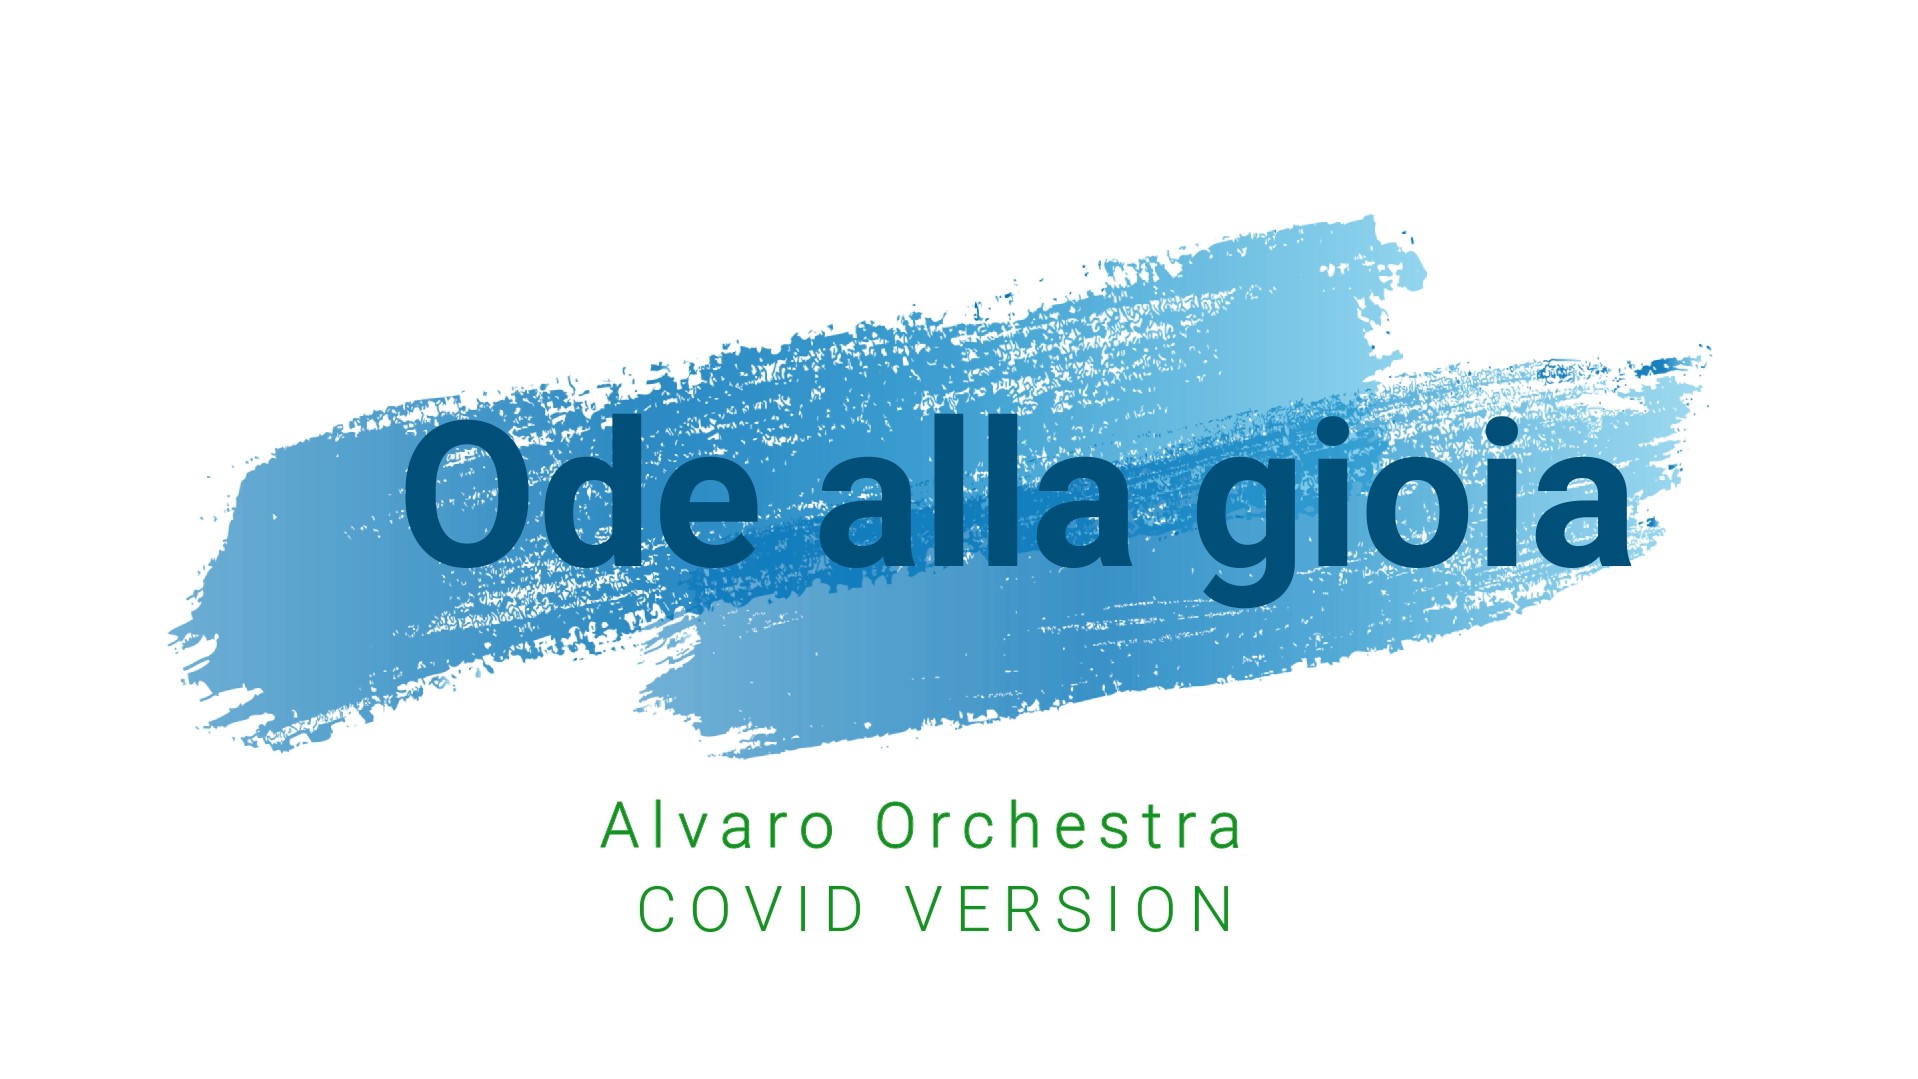 alvaro covid orchestra 2020